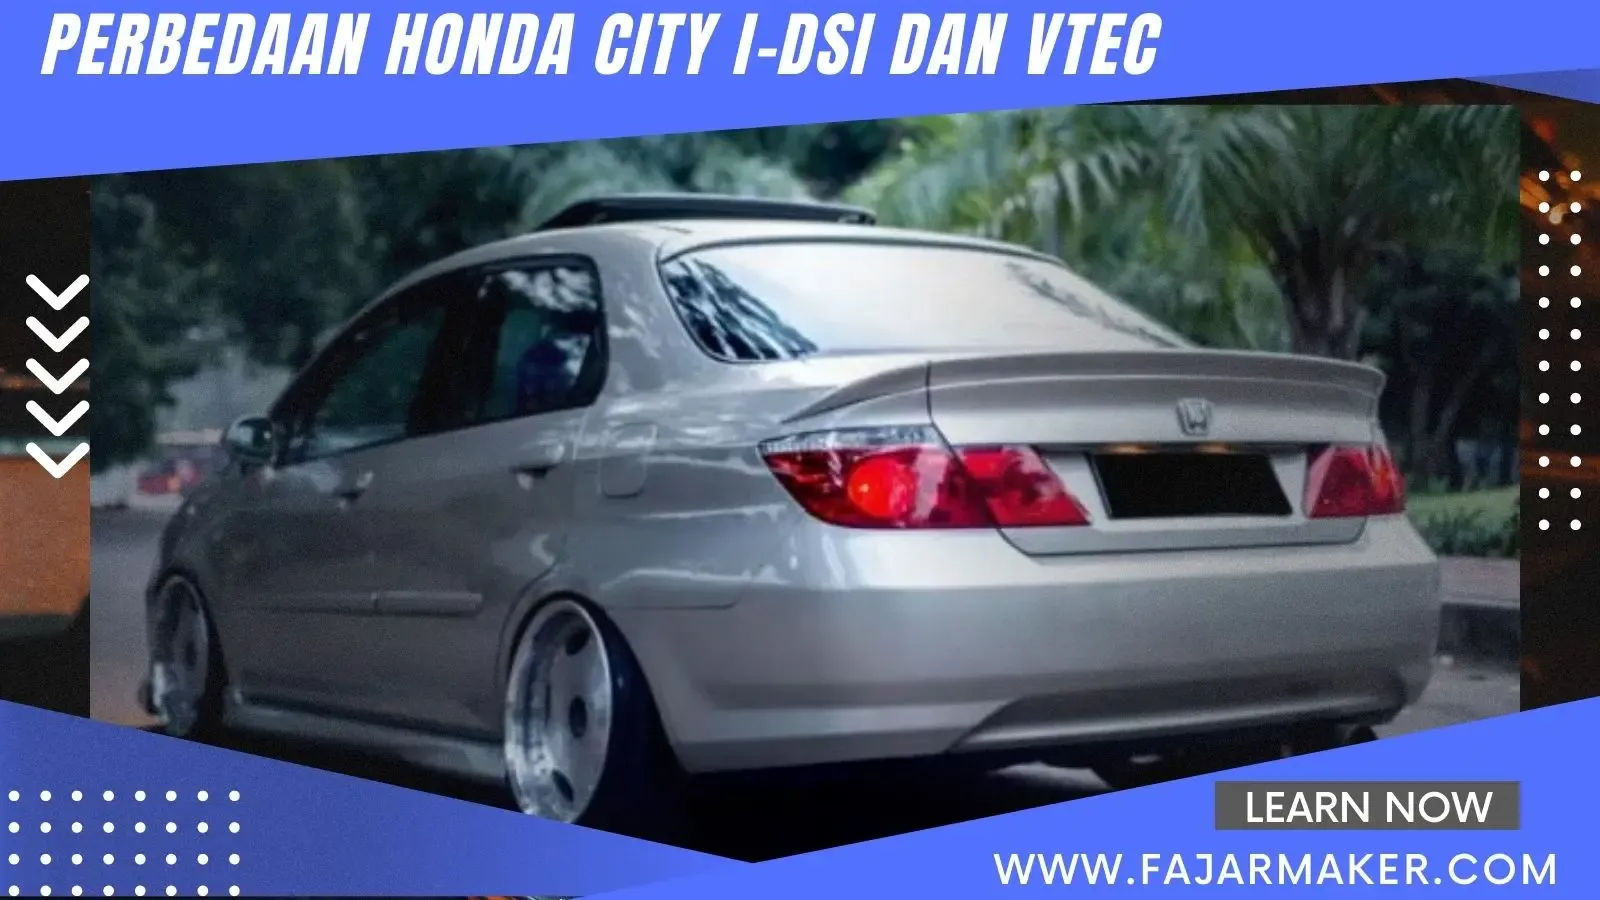 Perbedaan Honda City i-DSI dan VTEC